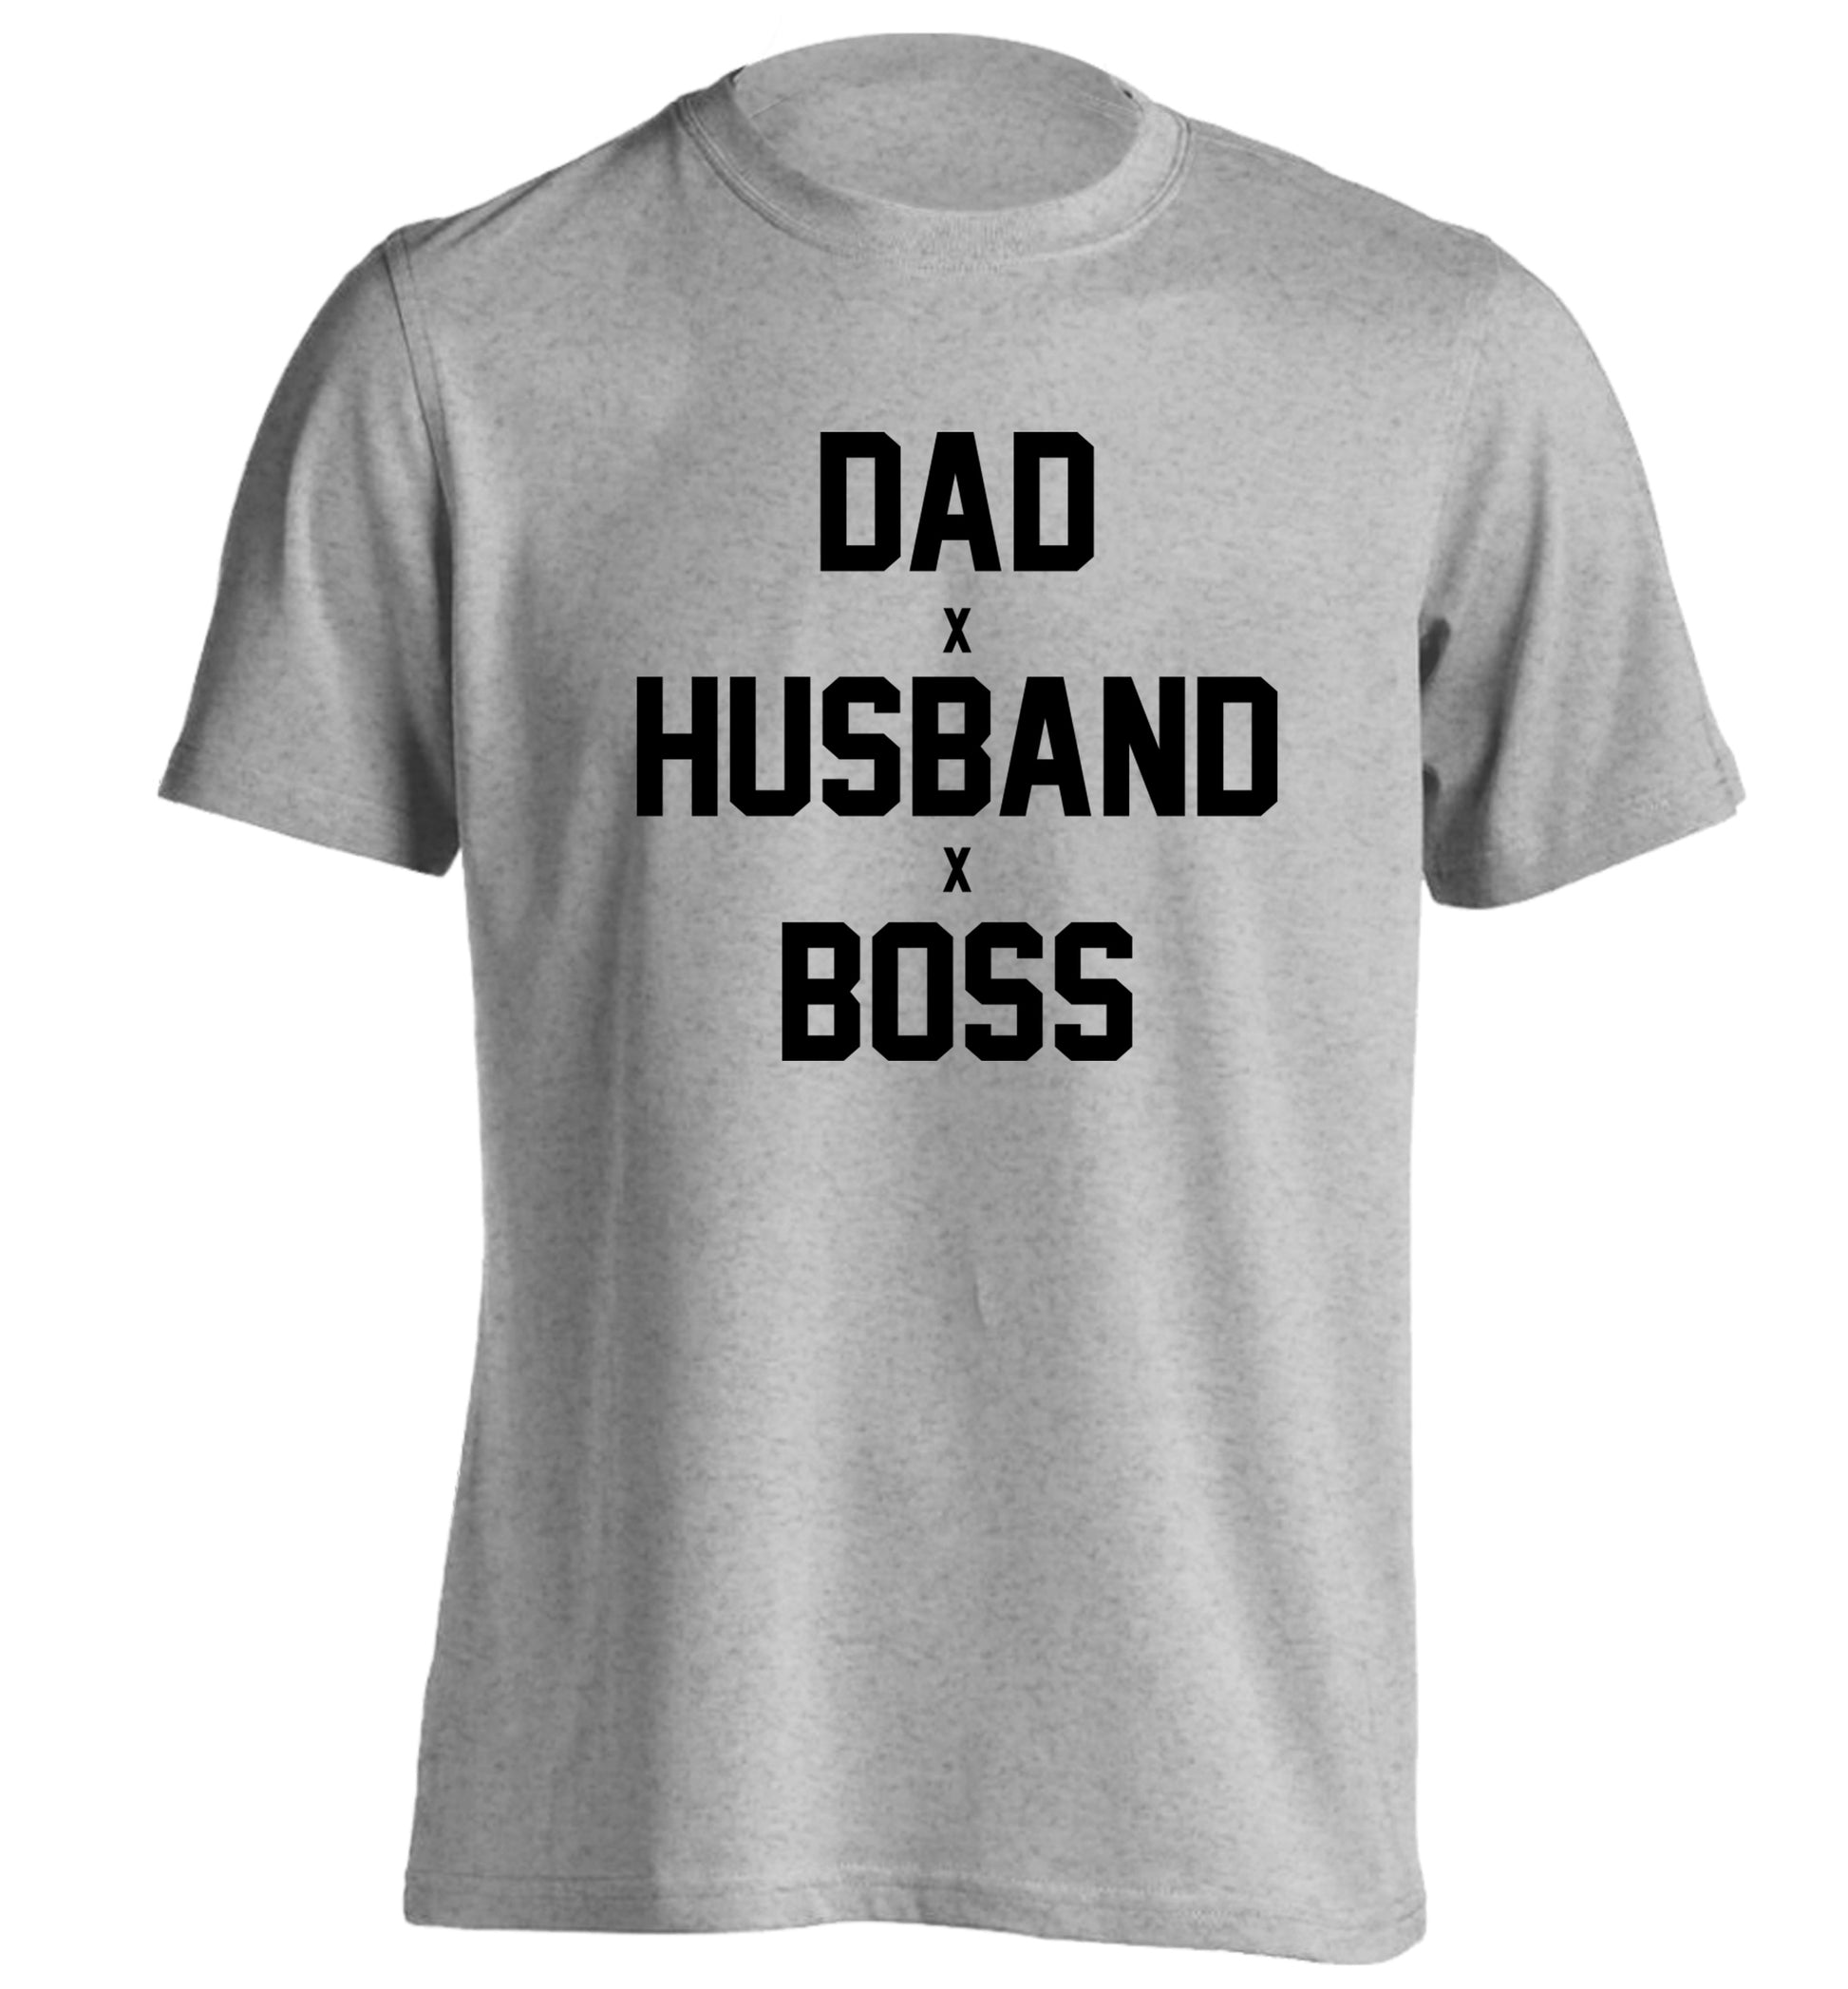 Dad husband boss adults unisex grey Tshirt 2XL